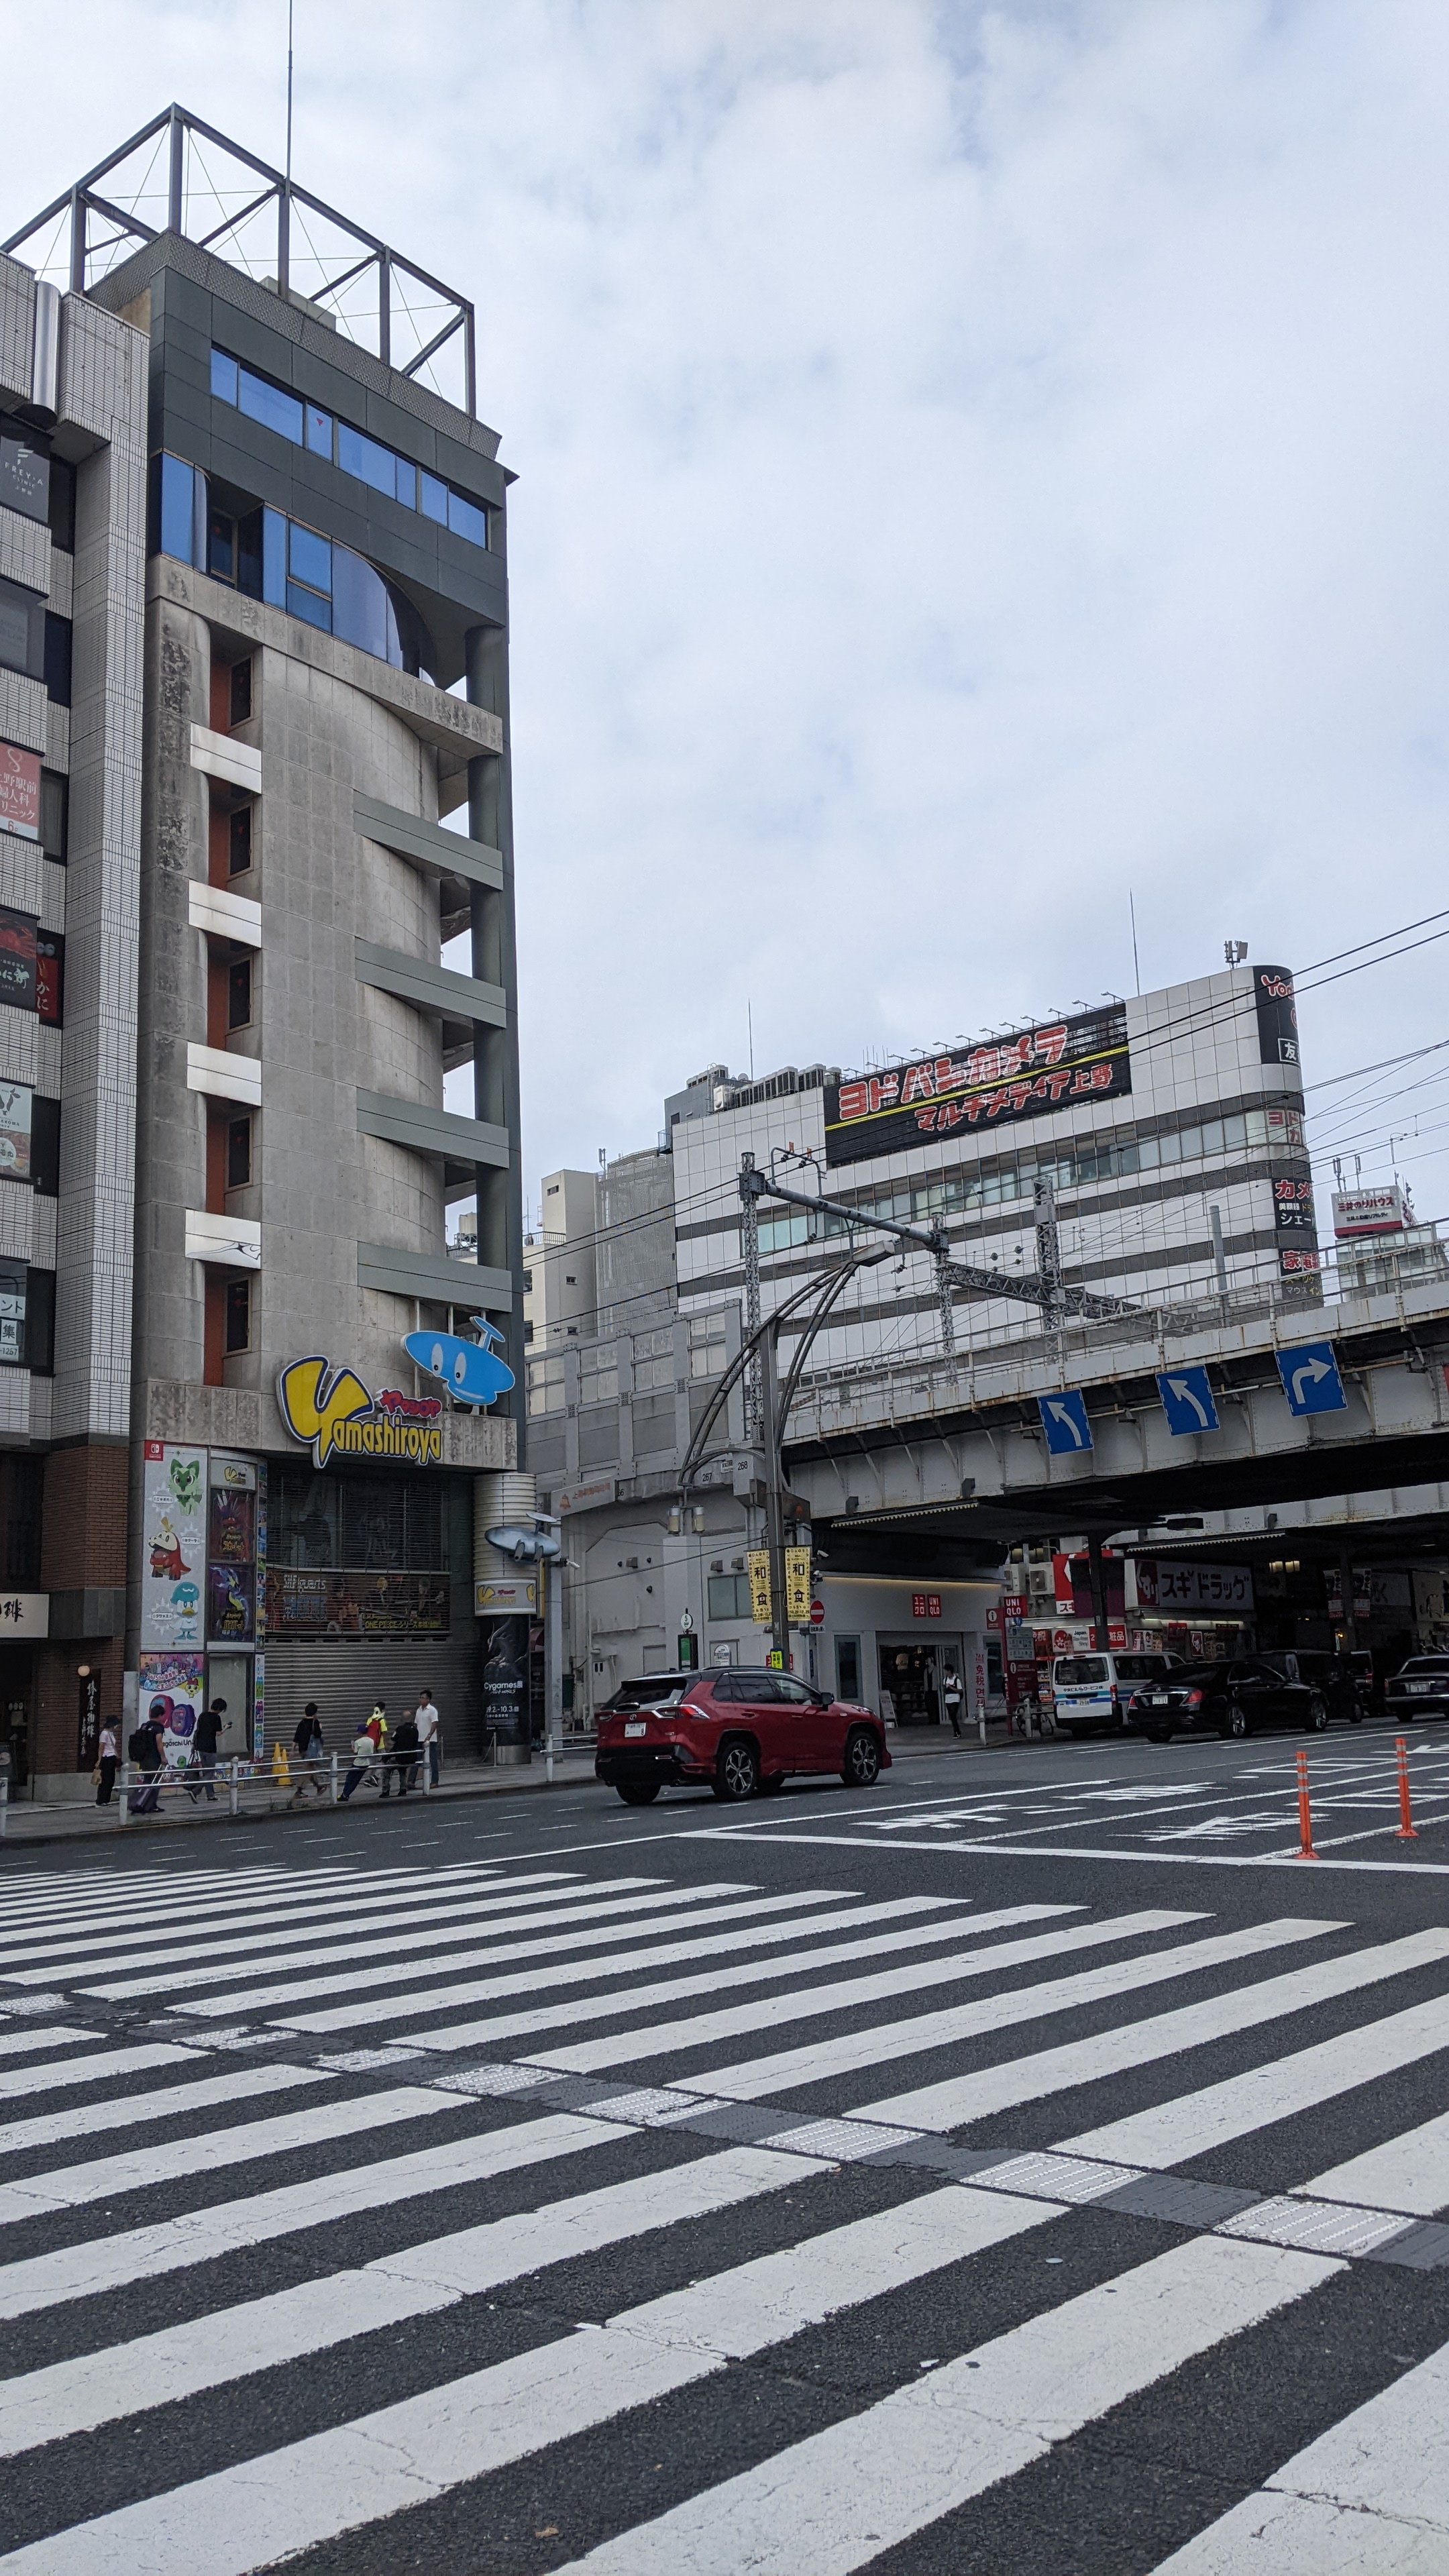 Yamashiroya toy store and Yodobashi Camera near the market